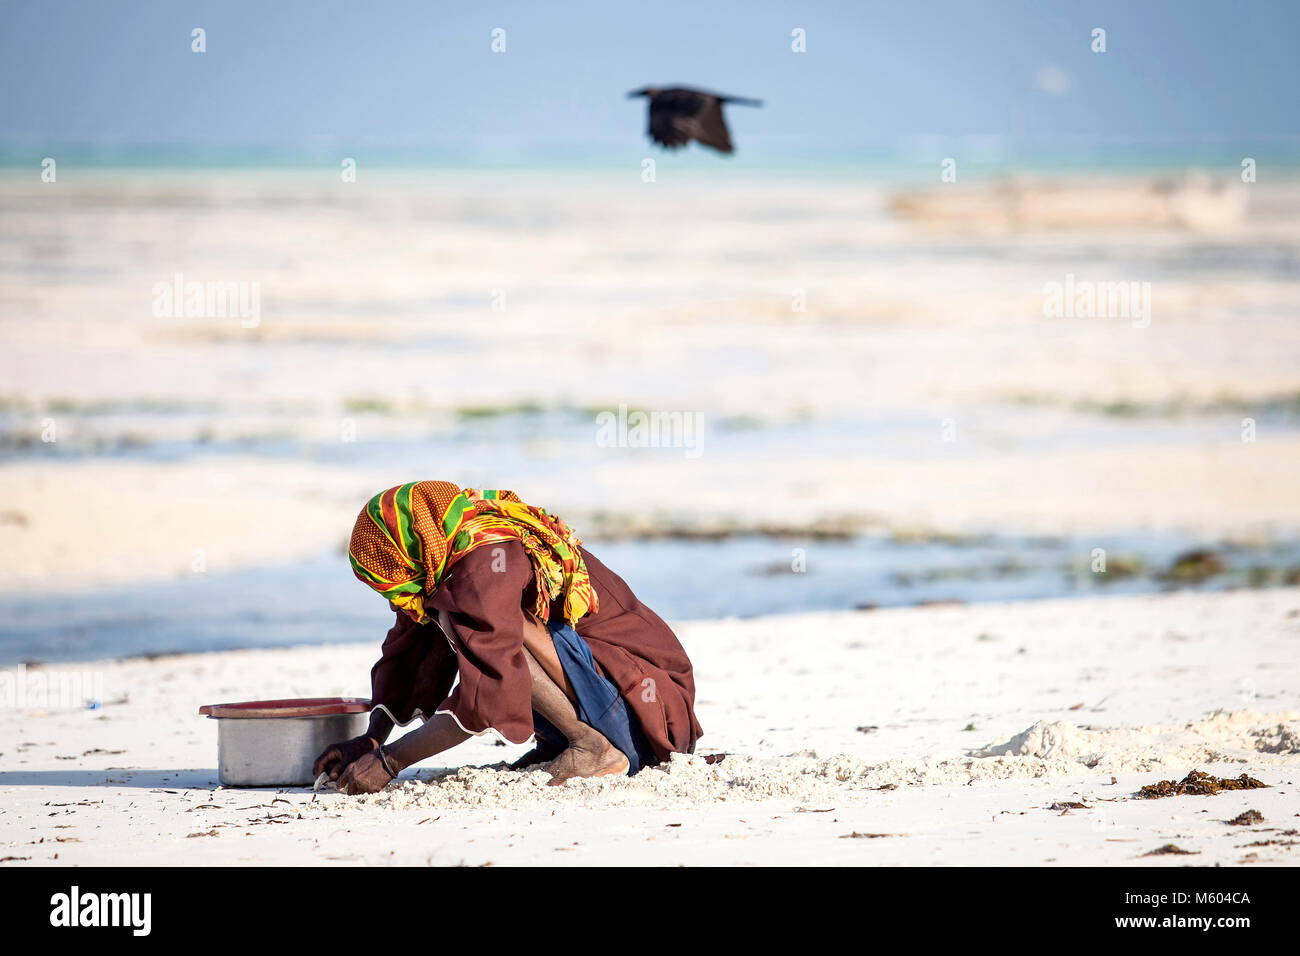 Muslimischen Mann sammeln Muscheln am Strand in Stone Town, die Insel Sansibar, Tansania. Zanzibar täglich leben. Krähe im Hintergrund fliegen. Stockfoto